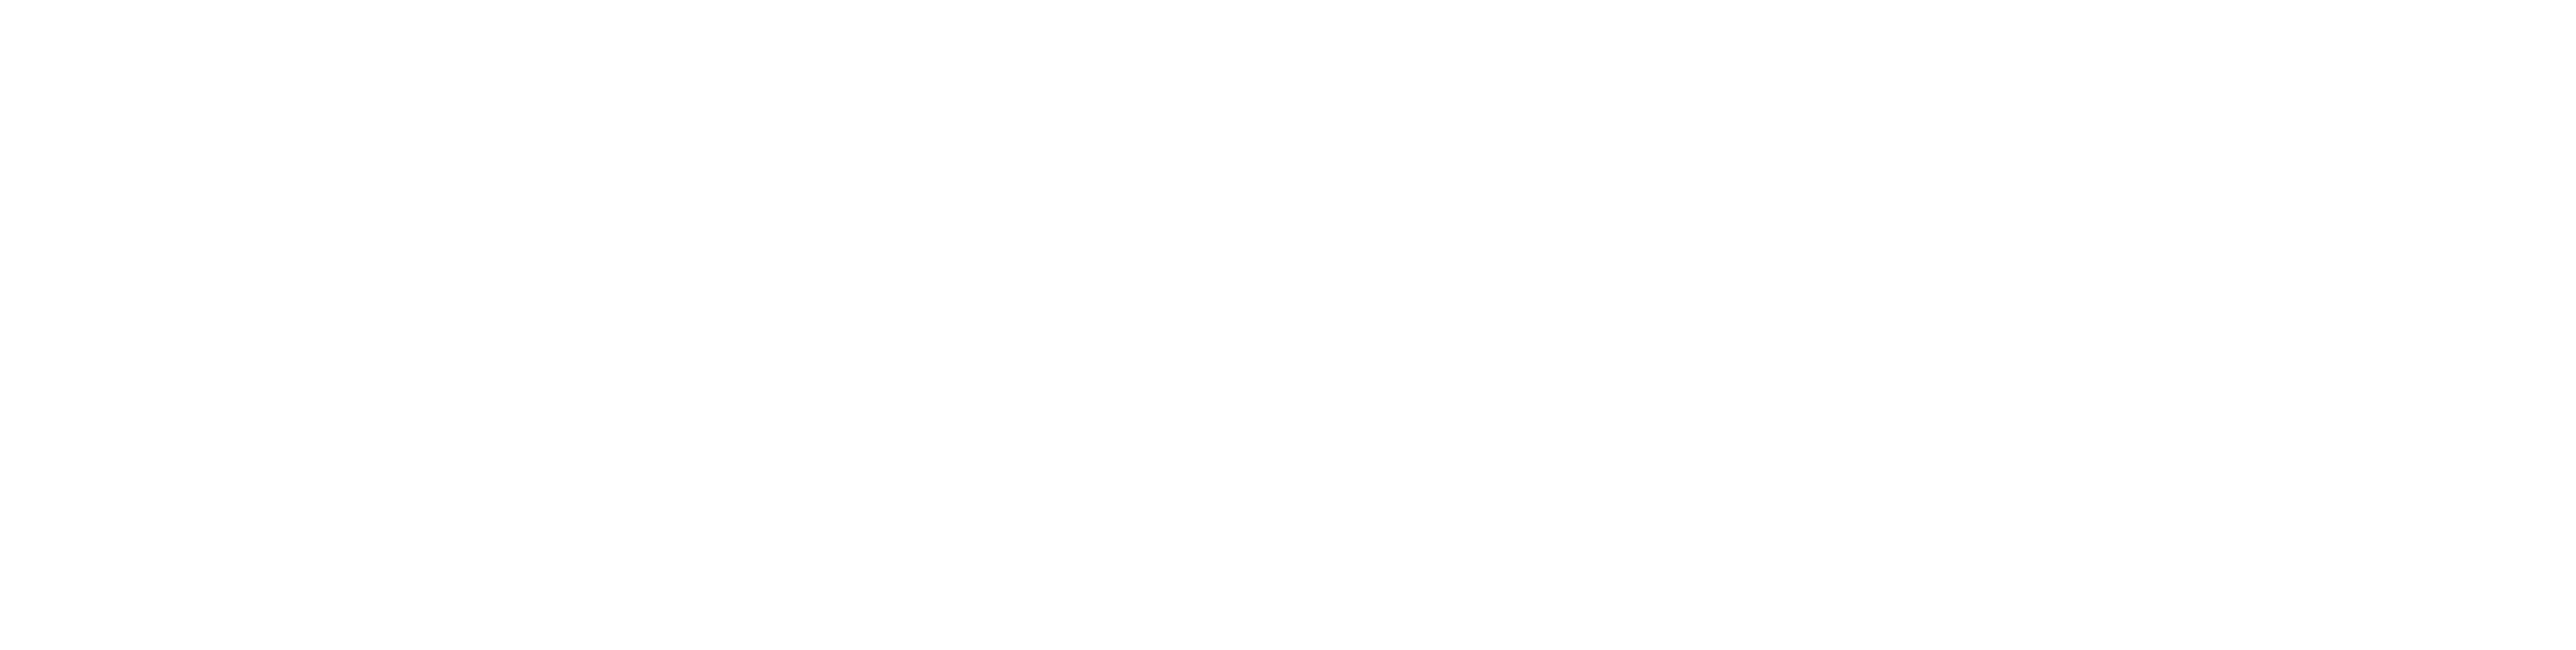 Copyking-Logo-Light-2